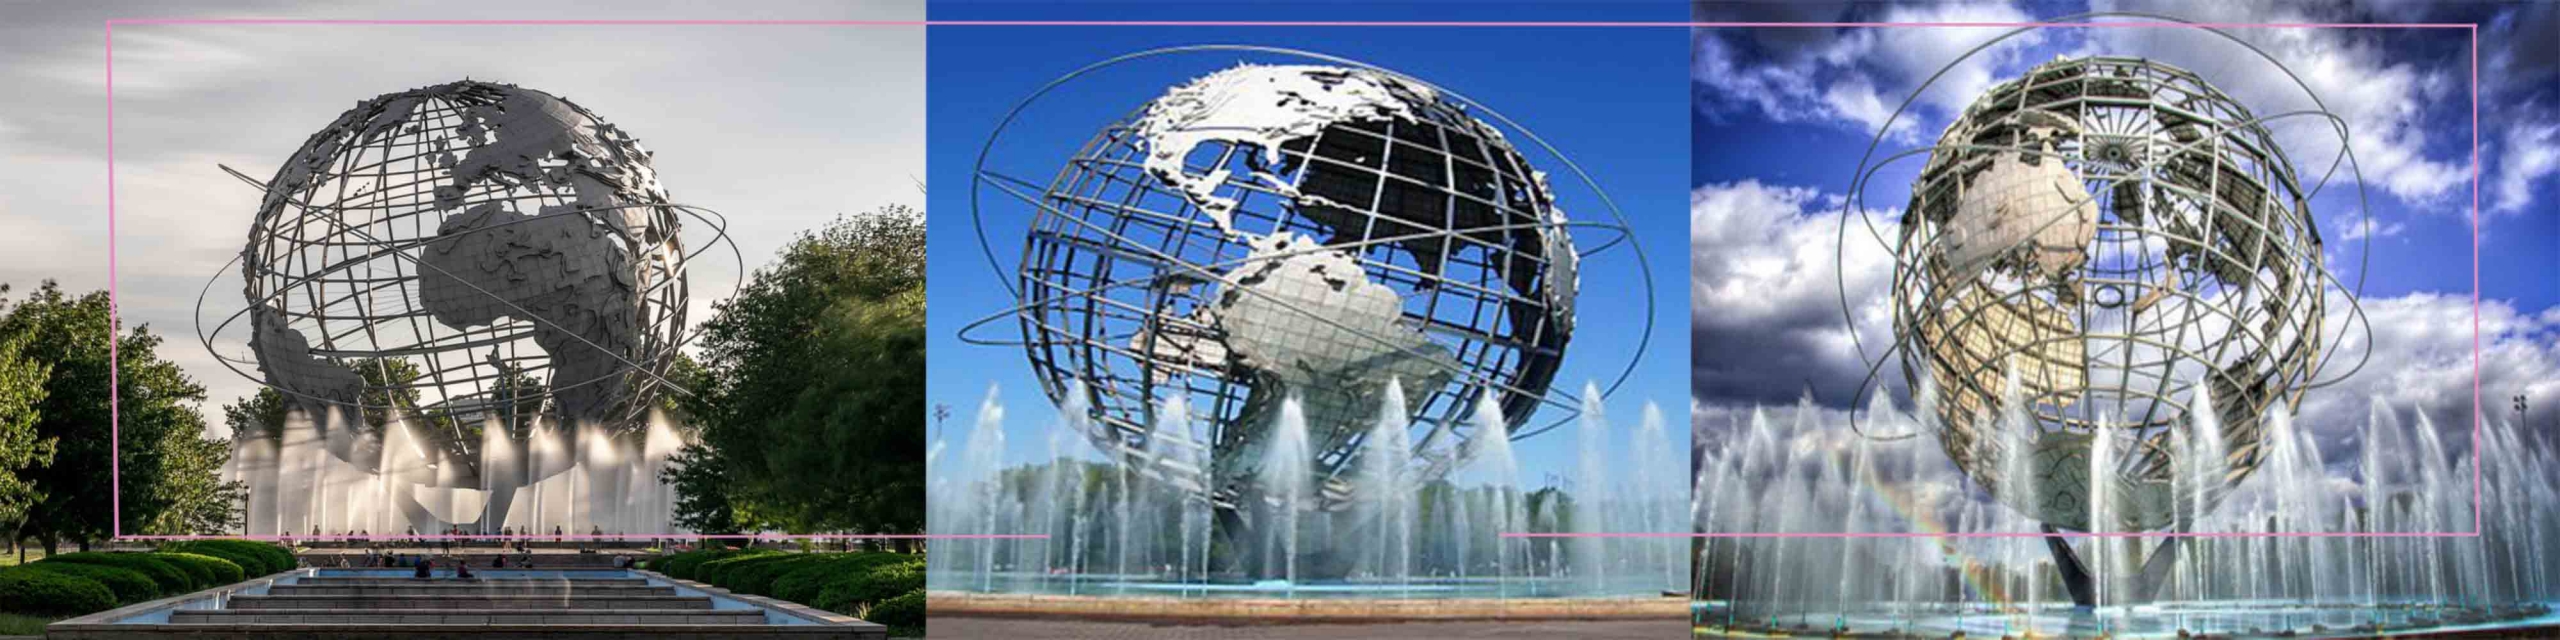 مجسمه کره جهان نما در نیویورک